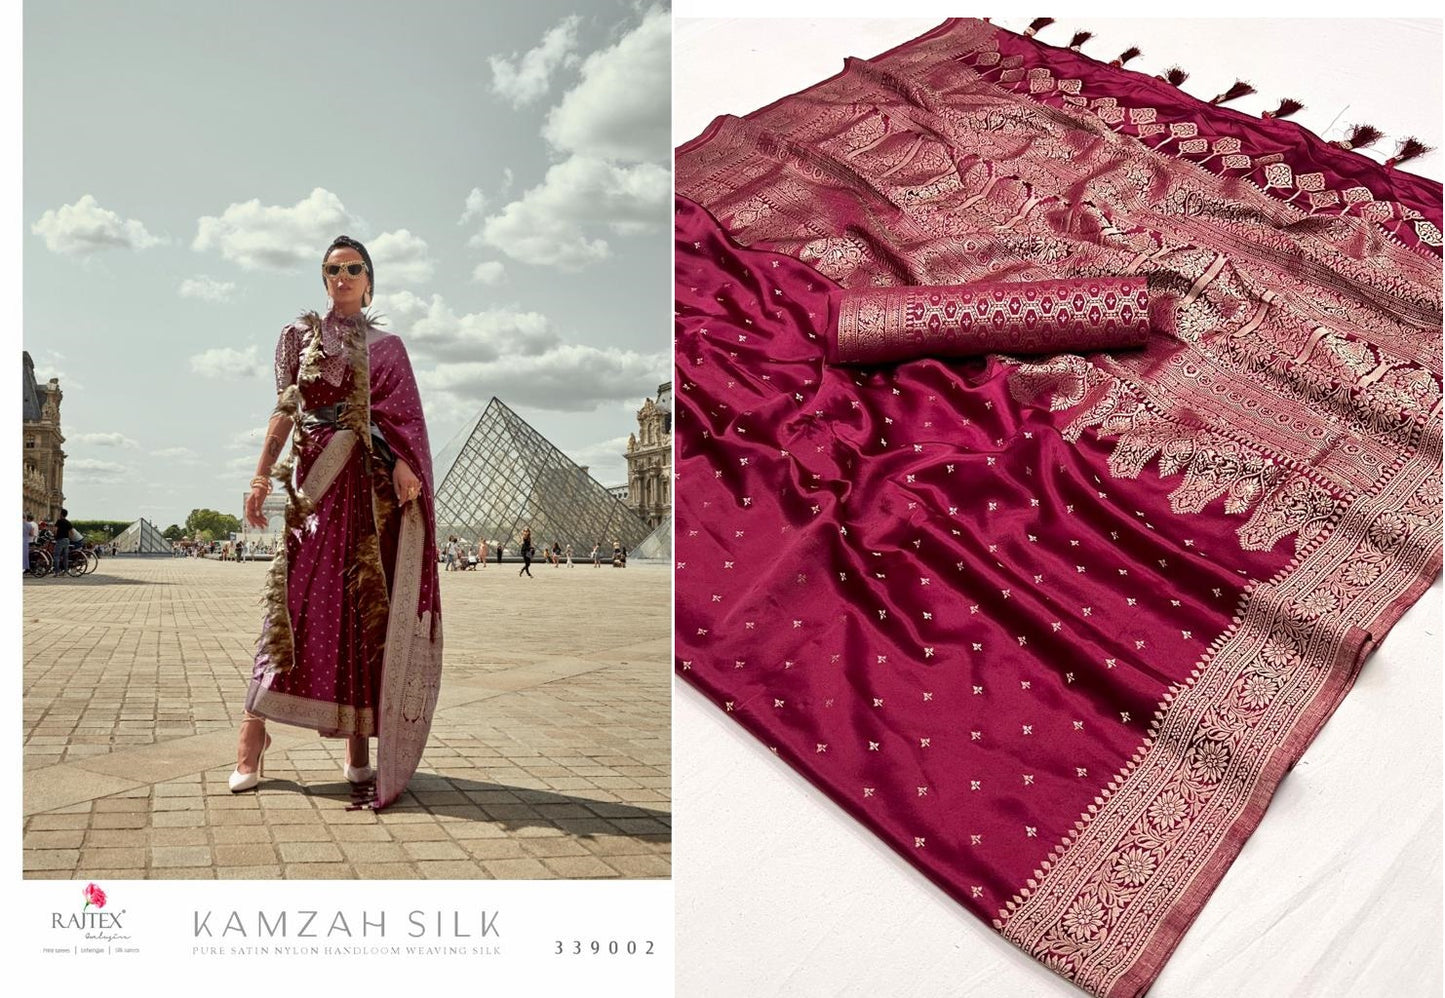 Kamzah Silk Rajtex Handloom Silk Sarees